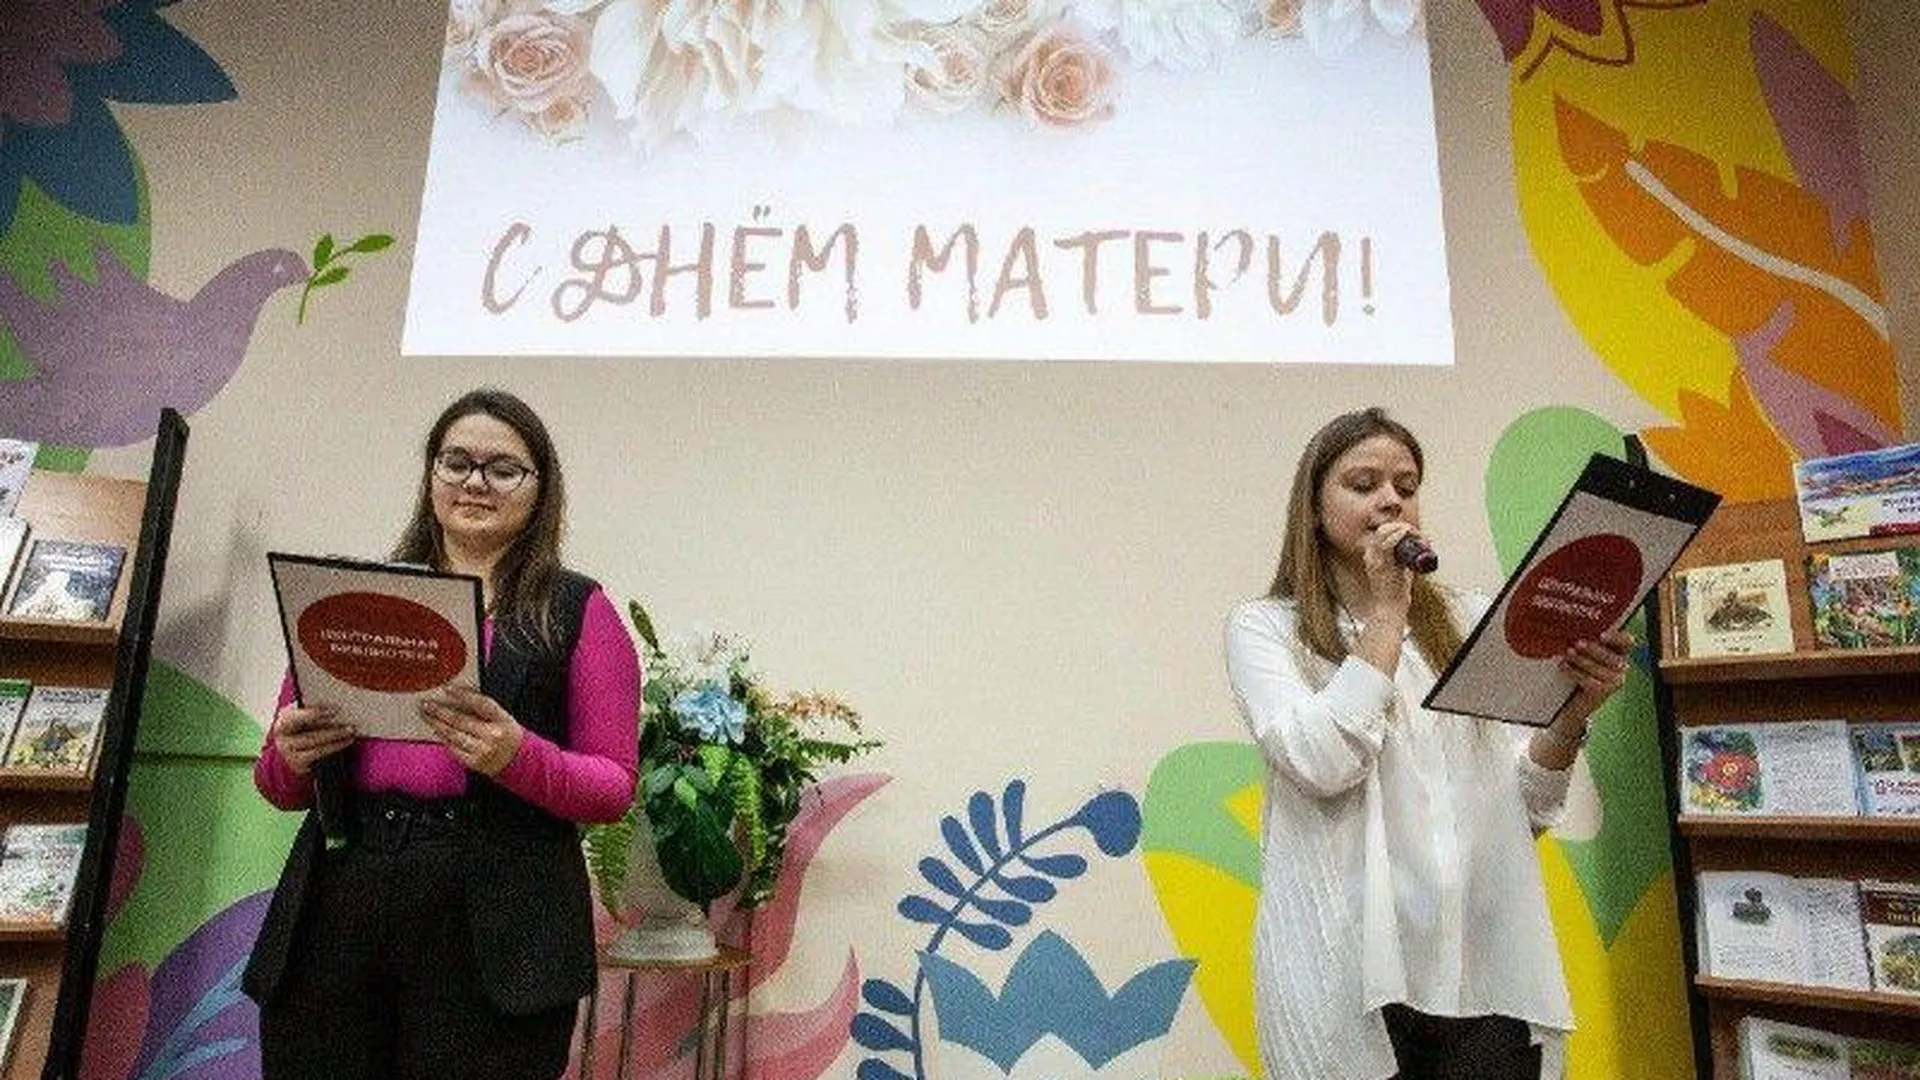 Более 10 тысяч человек посетили мероприятия в библиотеках Подмосковья в честь Дня матери